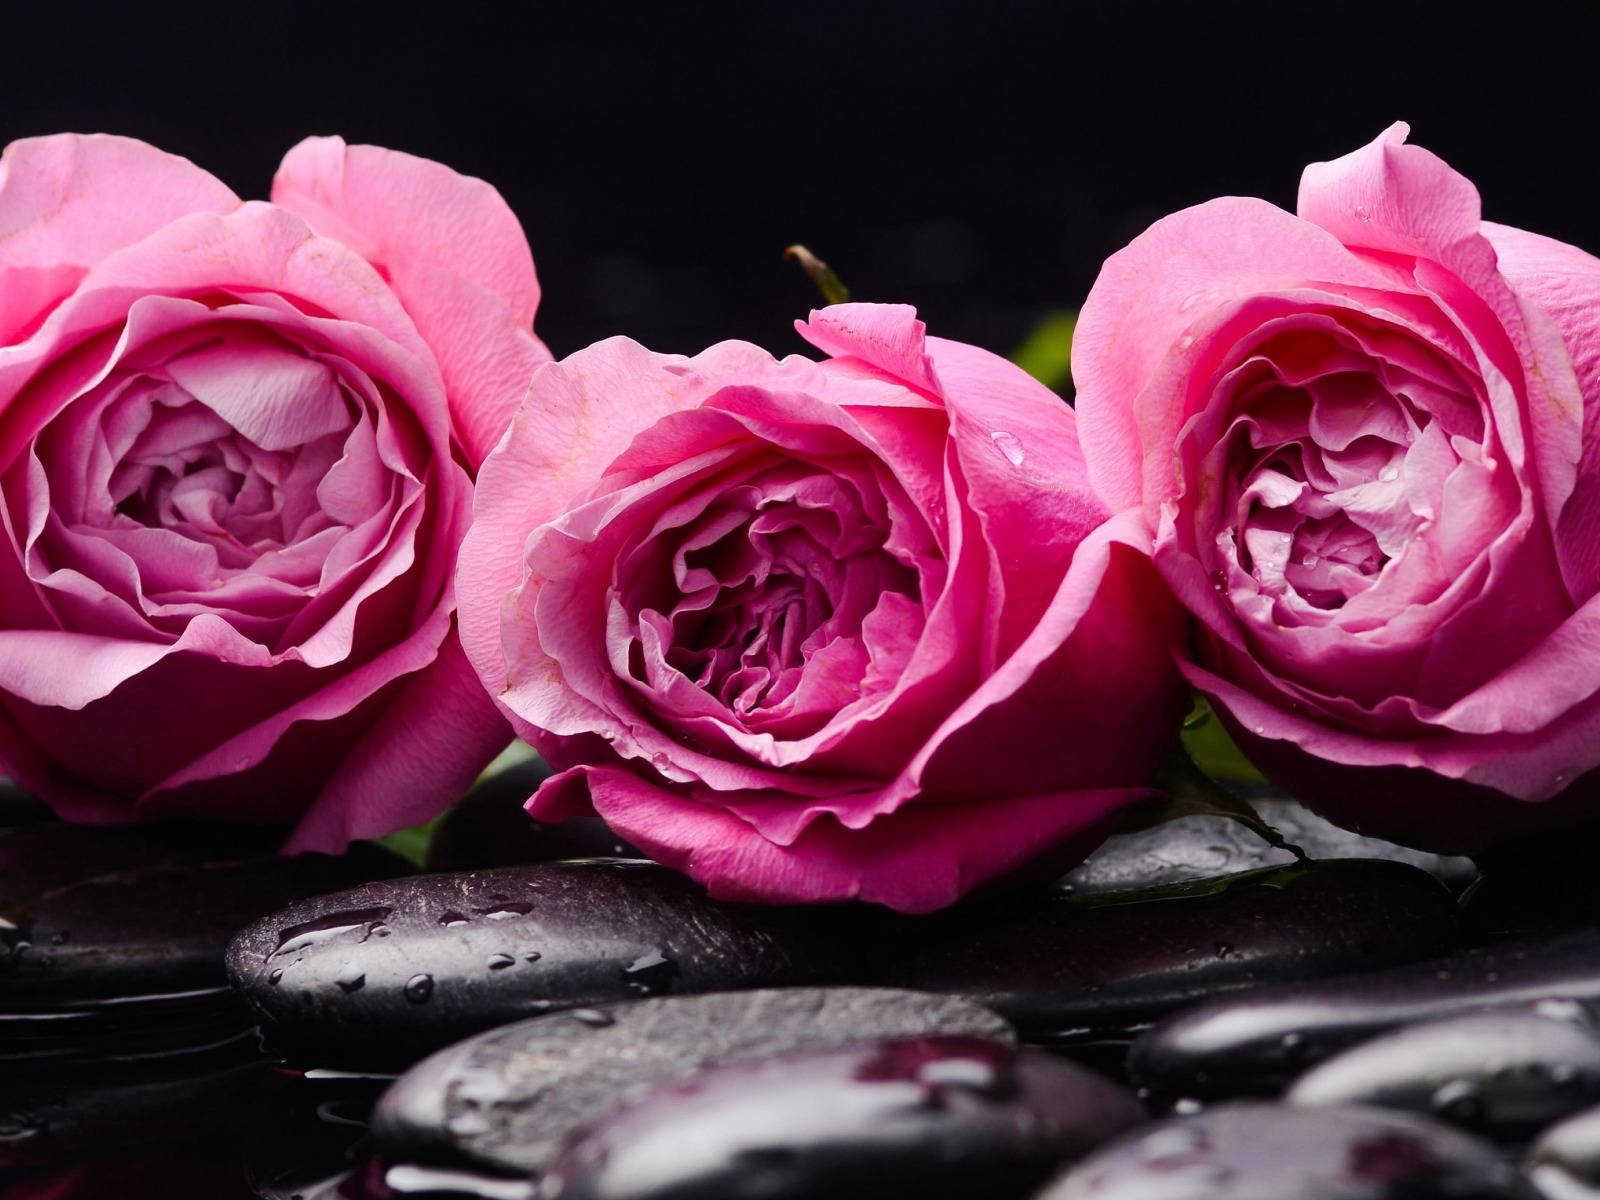 اجمل الورود الرومانسية 2019 خلفيات جميلة Beautiful Natural Romantic Hd